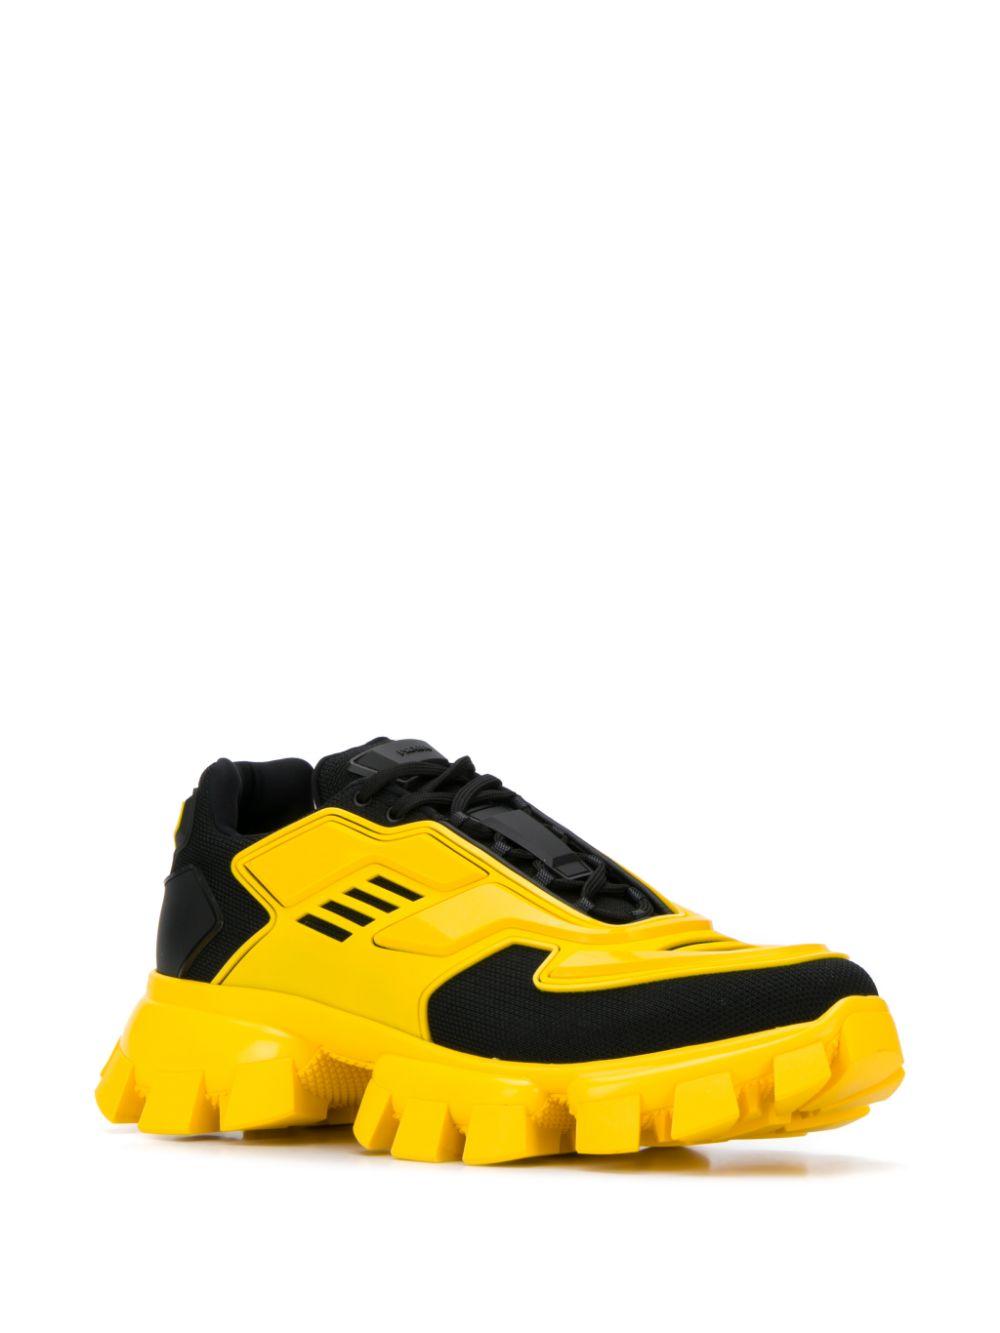 Buy > mens yellow prada sneakers > in stock